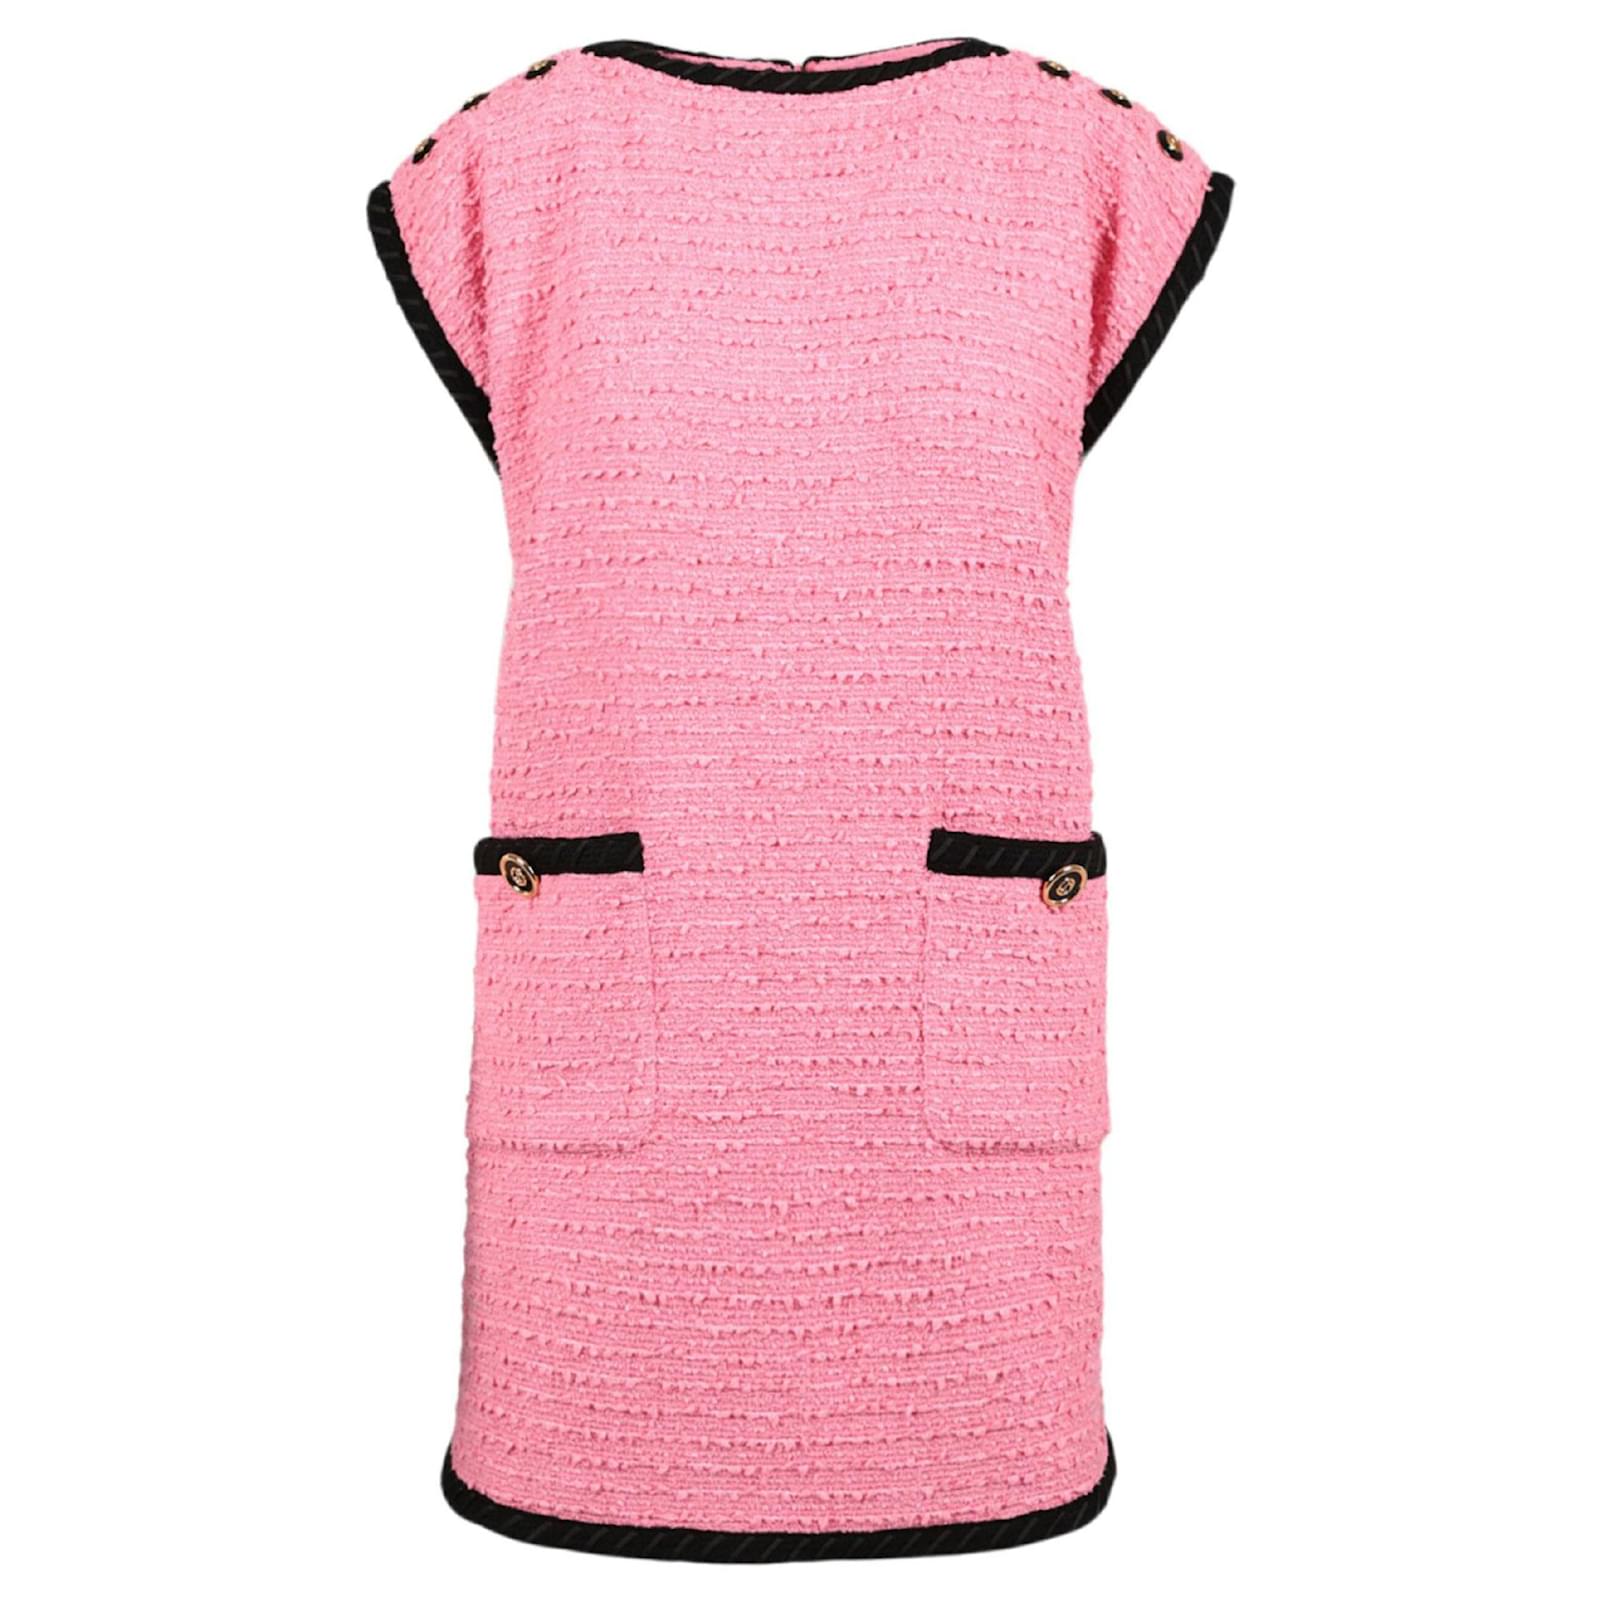 gucci pink dress